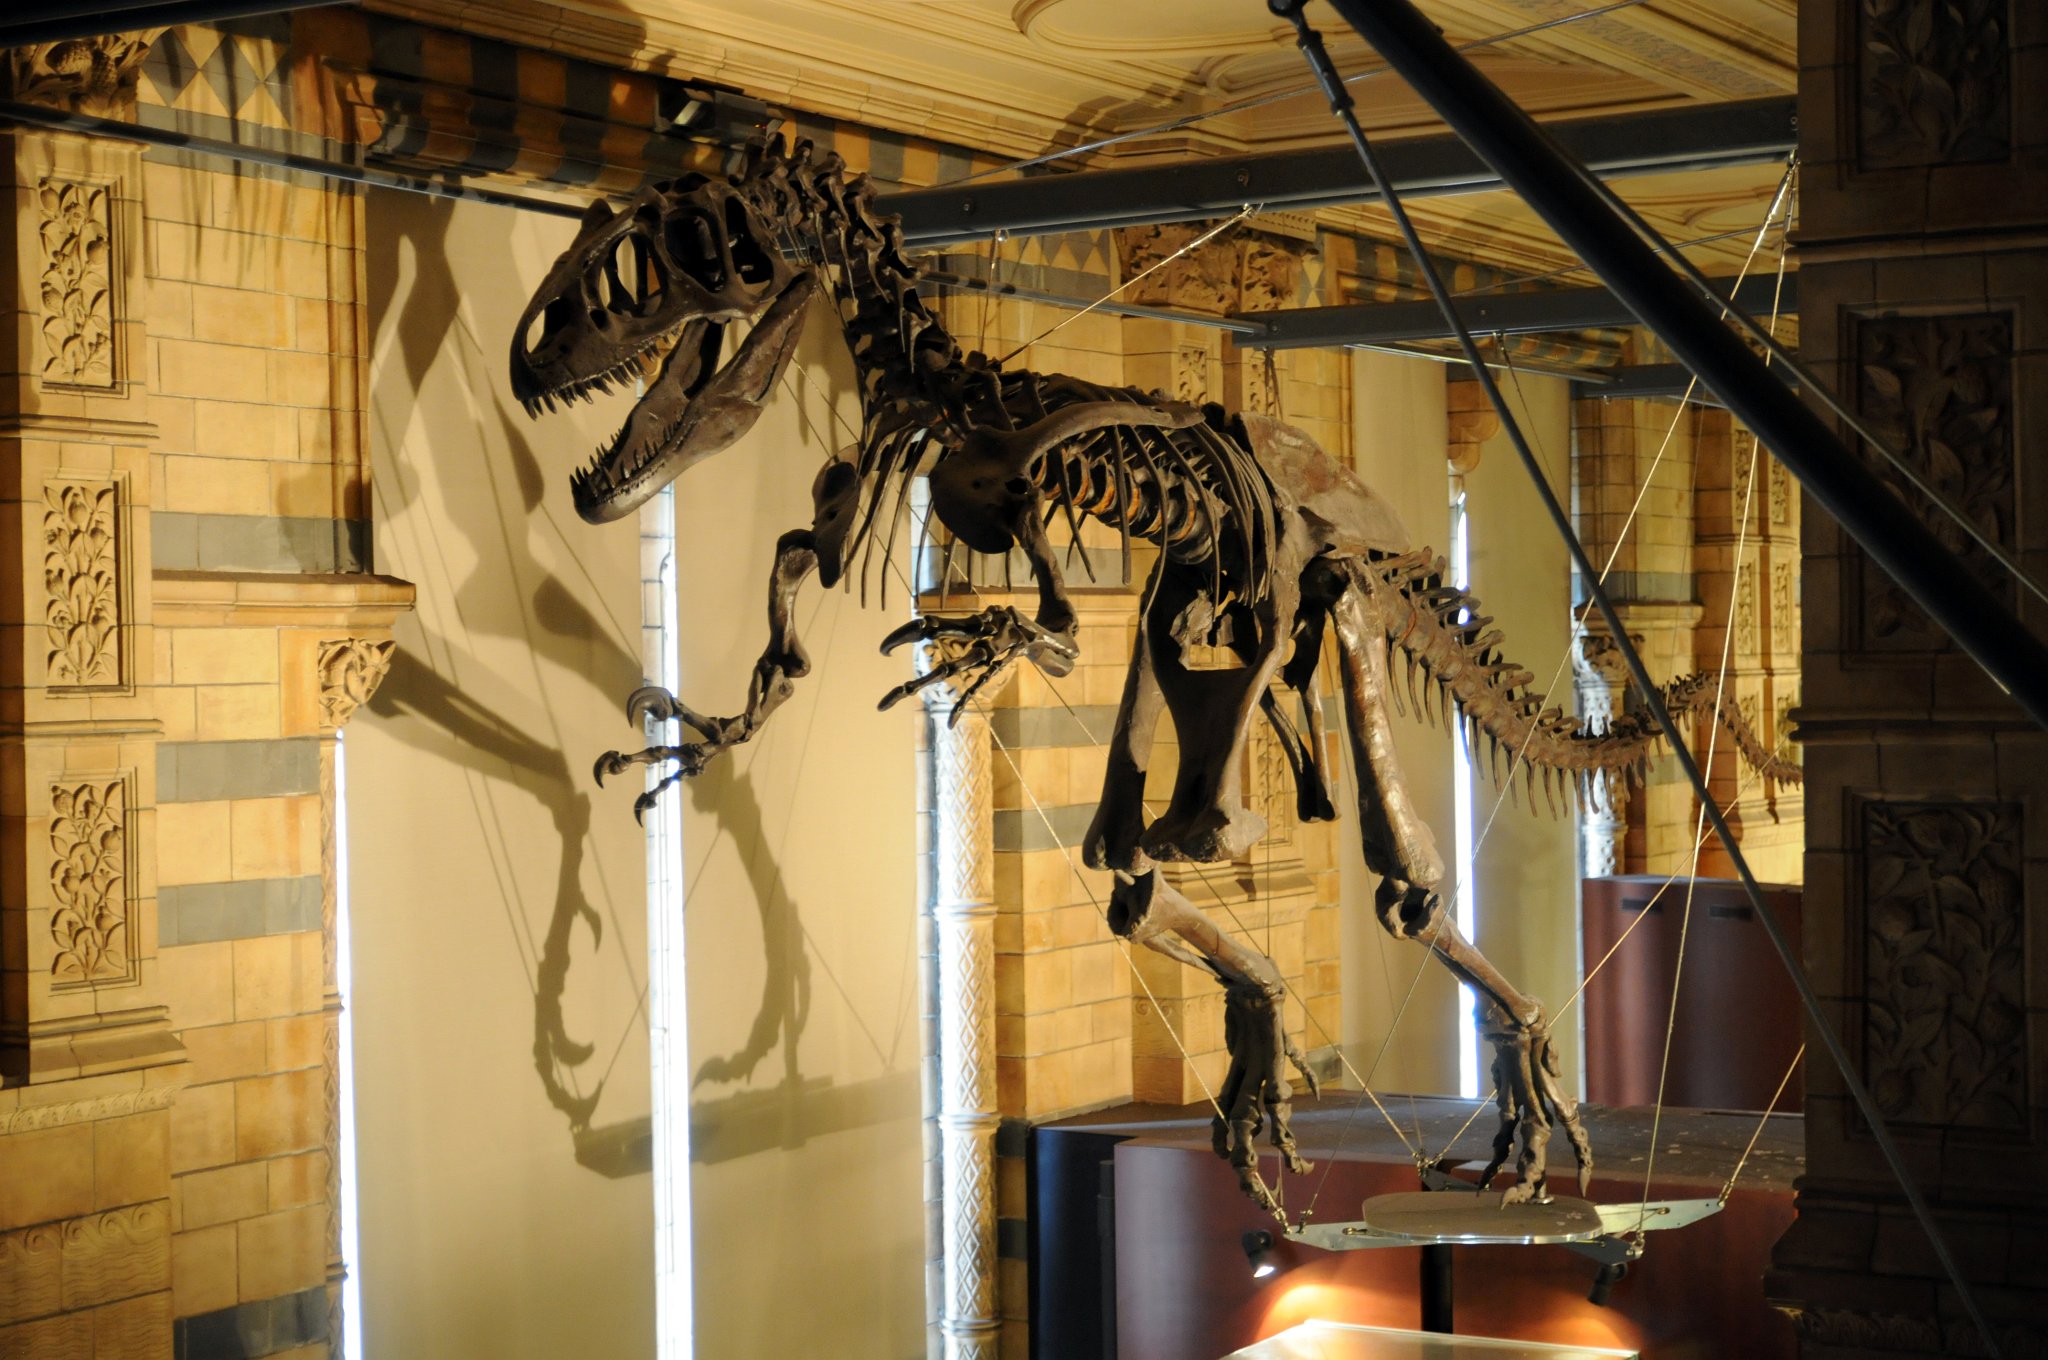 DSC_7116_1.jpg - Allosaurus (z řeckého allos/αλλος „cizí“, „neznámý“ nebo „divný“ + sauros/σαυρος „ještěr“) byl popsán slavným americkým paleontologem z 19. století Othnielem Charlesem Marshem v roce 1877. Byl relativně blízkým příbuzným gigantických karcharodontosauridů, jejichž nejznámějšími zástupci jsou Giganotosaurus carolinii (popsán Coriou a Salgadem v roce 1995) a Mapusaurus roseae, který byl popsán Coriou a Curriem v roce 2006 (oba z podčeledi Giganotosaurinae, vytvořené při popisu mapusaura. Nejužší společný klad, který zahrnuje allosaura (resp. Allosauridae) s karcharodontosauridy je nadčeleď Allosauroidea. Allosaurus byl nepochybně masožravcem, ale někteří vědci tvrdí, že stisk alosaura nebyl dostatečně silný, aby zabil nějakého živočicha, možná tedy byl pouhým mrchožroutem. Pokud byl aktivním dravcem, není jisté, zda lovil samostatně, nebo ve smečce. Stejně jako ostatní dinosauři, tak i tito teropodi snášeli vejce. Podle některých kosterních pozůstatků vědci zjistili, že alosauři mohli být na svých cestách sledováni 5-6 m dlouhými ceratosaury, kteří se živili tím, co alosauři na svém úlovku nechali. Alosauři stáli (spolu s příbuznými druhy) na vrcholu potravního řetězce. Pterosauři, menší draví dinosauři a nedávno objevení draví, psům velmi podobní savci, představovali pro allosaury jen malou potravní konkurenci.